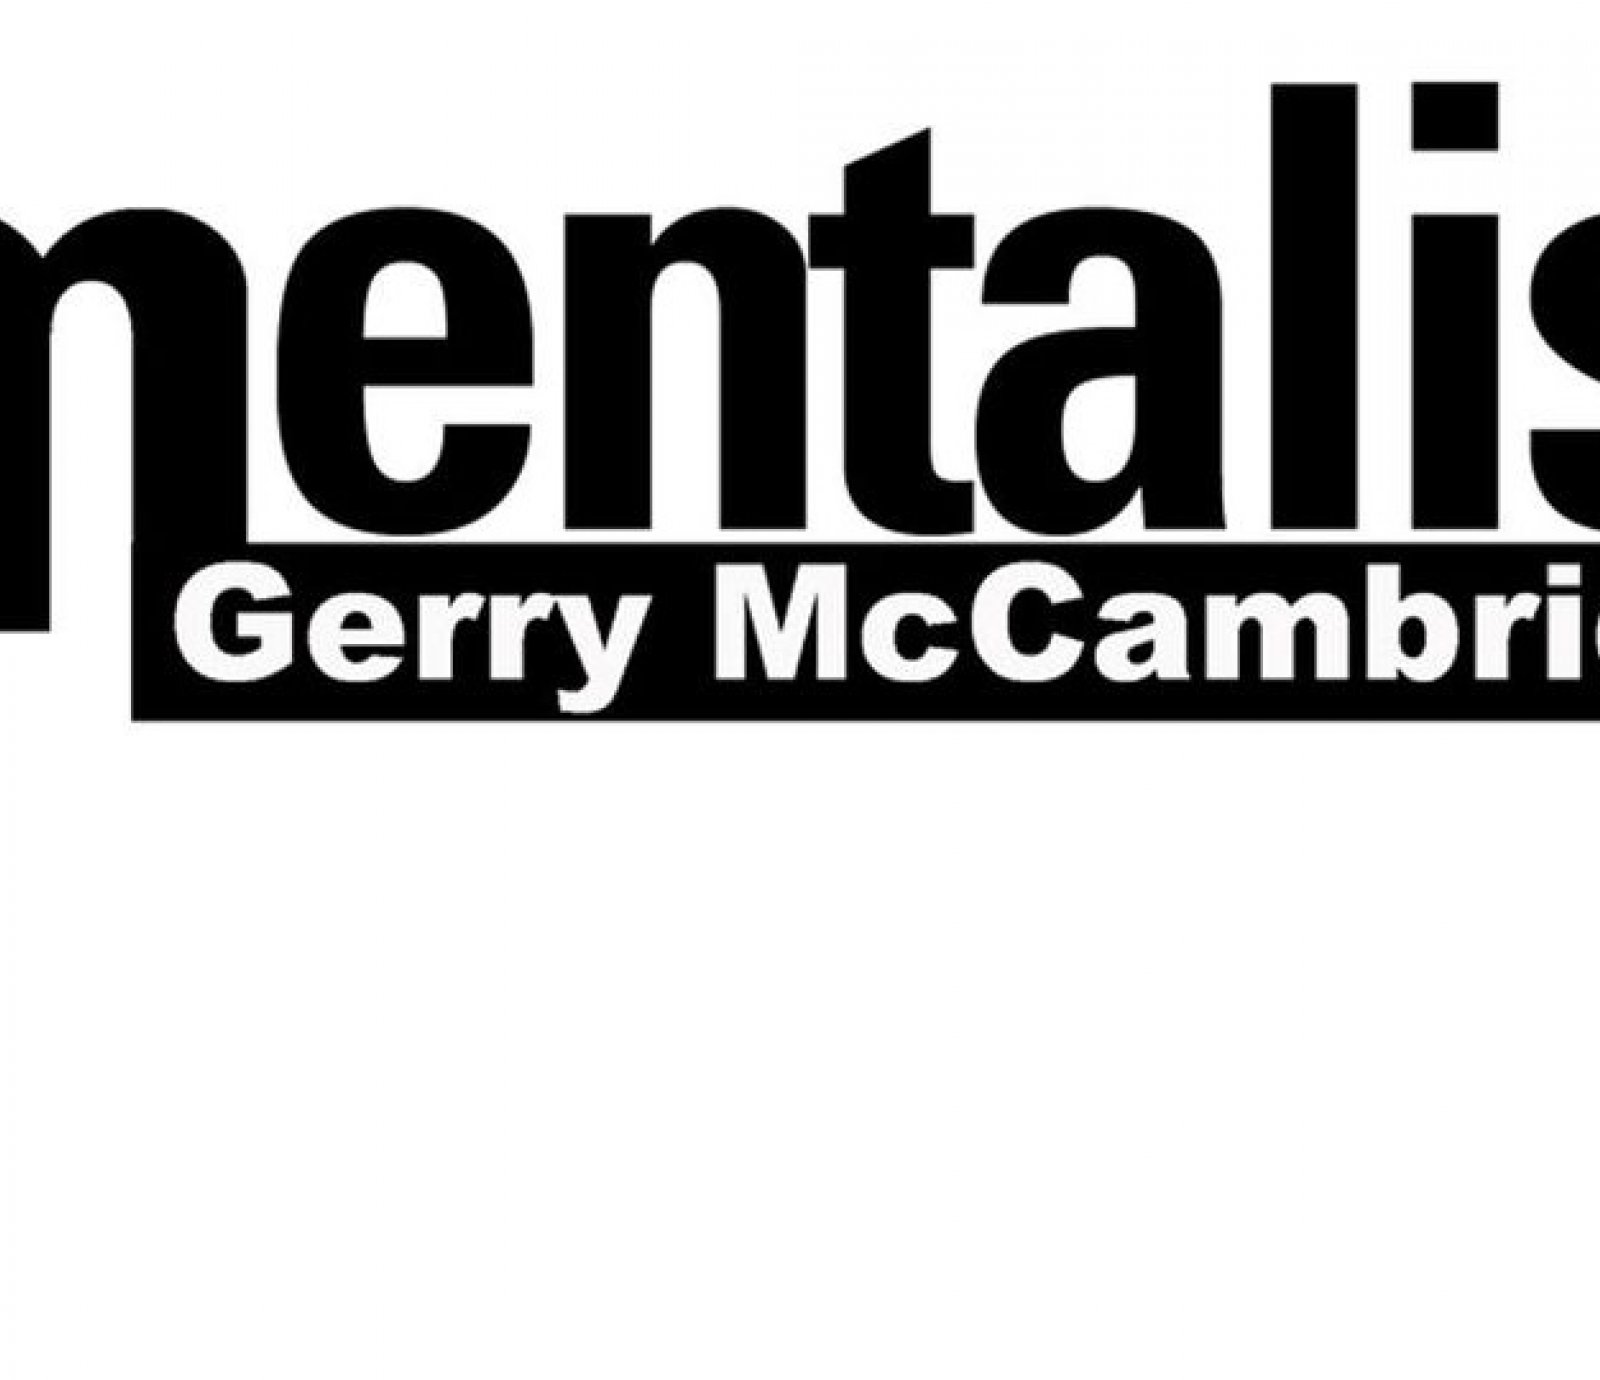 Gerry McCambridge